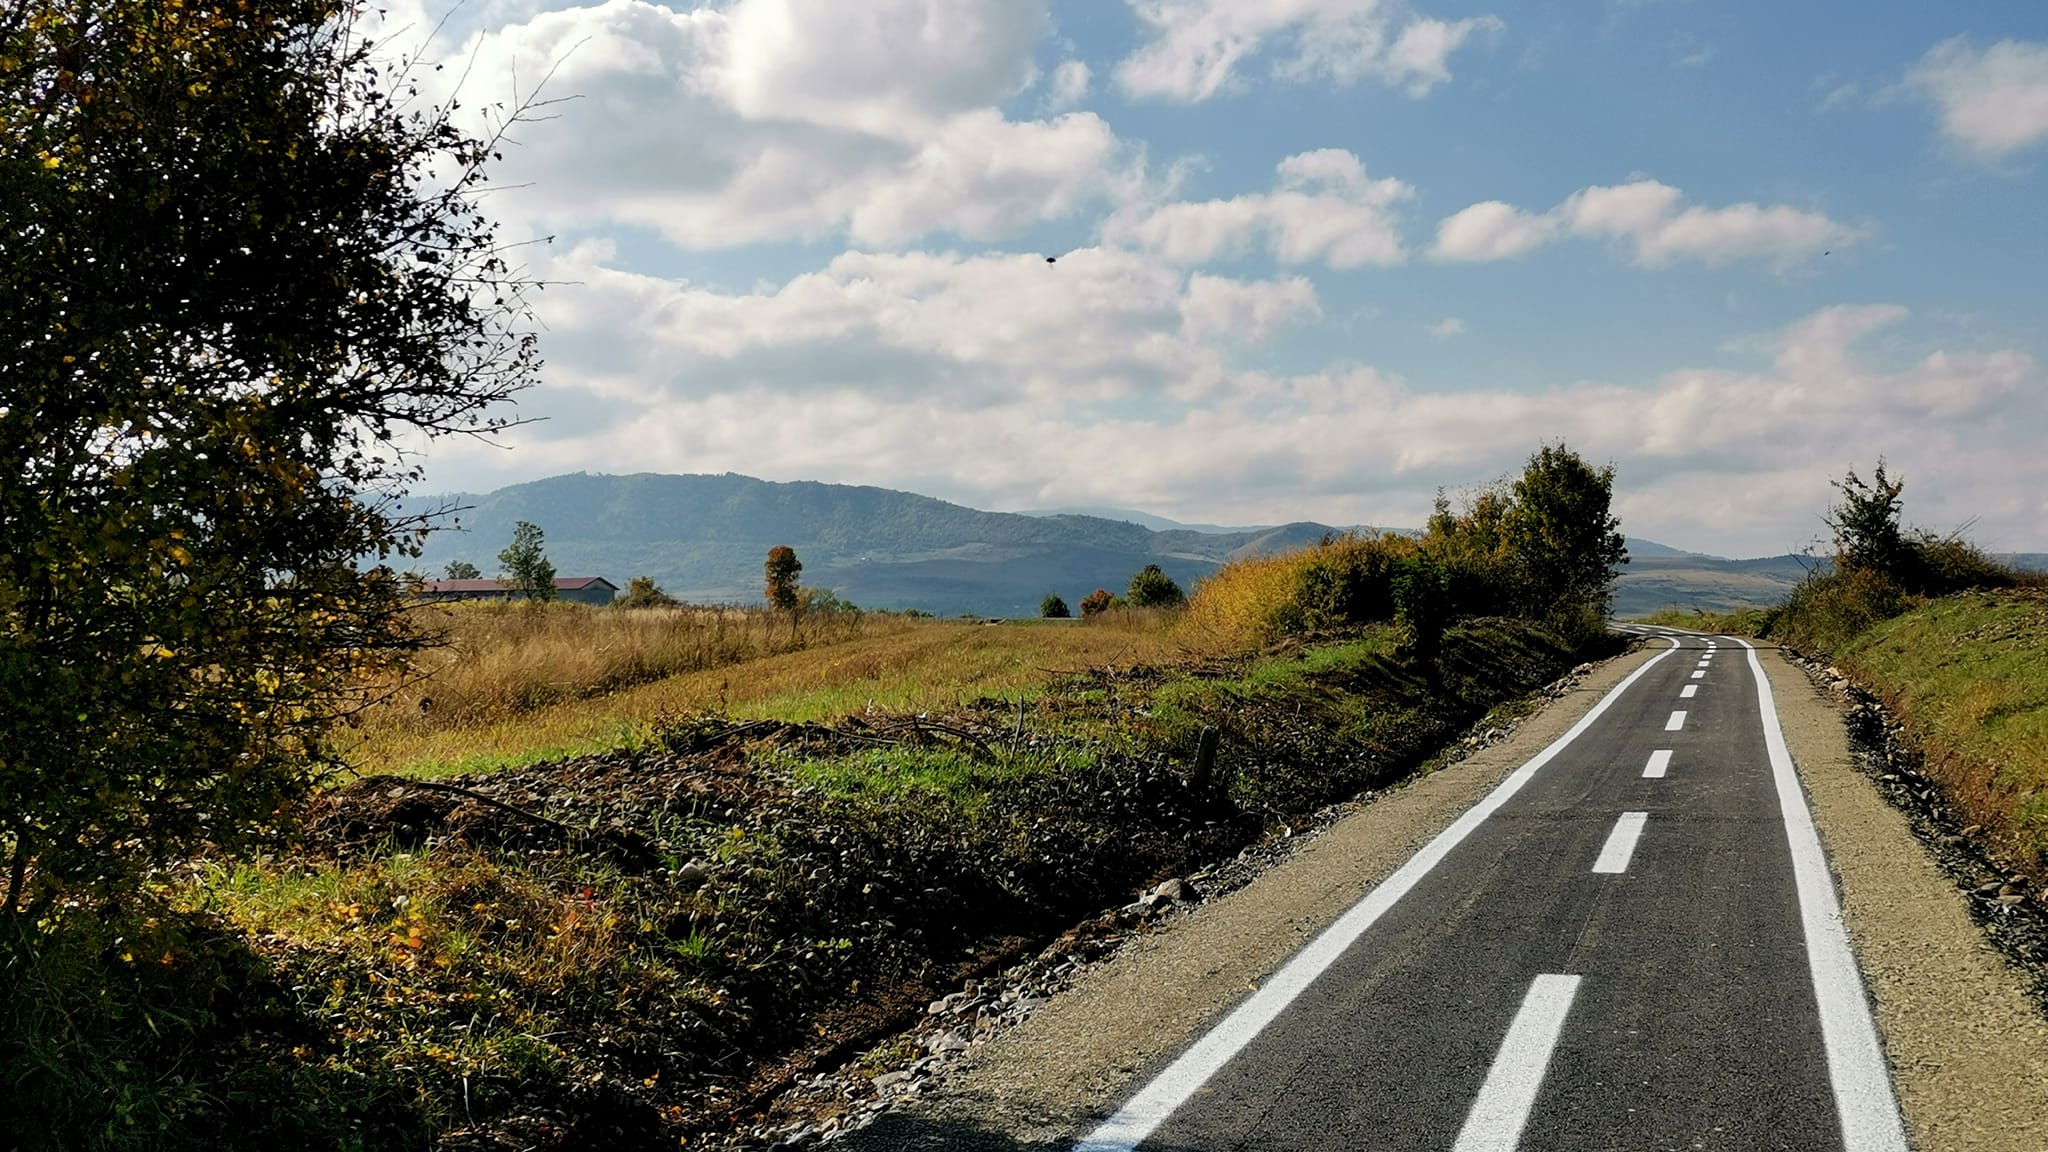 Licitație pentru proiectarea unui traseu velo în județul Cluj, în Munții Apuseni. Foto sugestiv: Facebook/ Claudiu Salanță